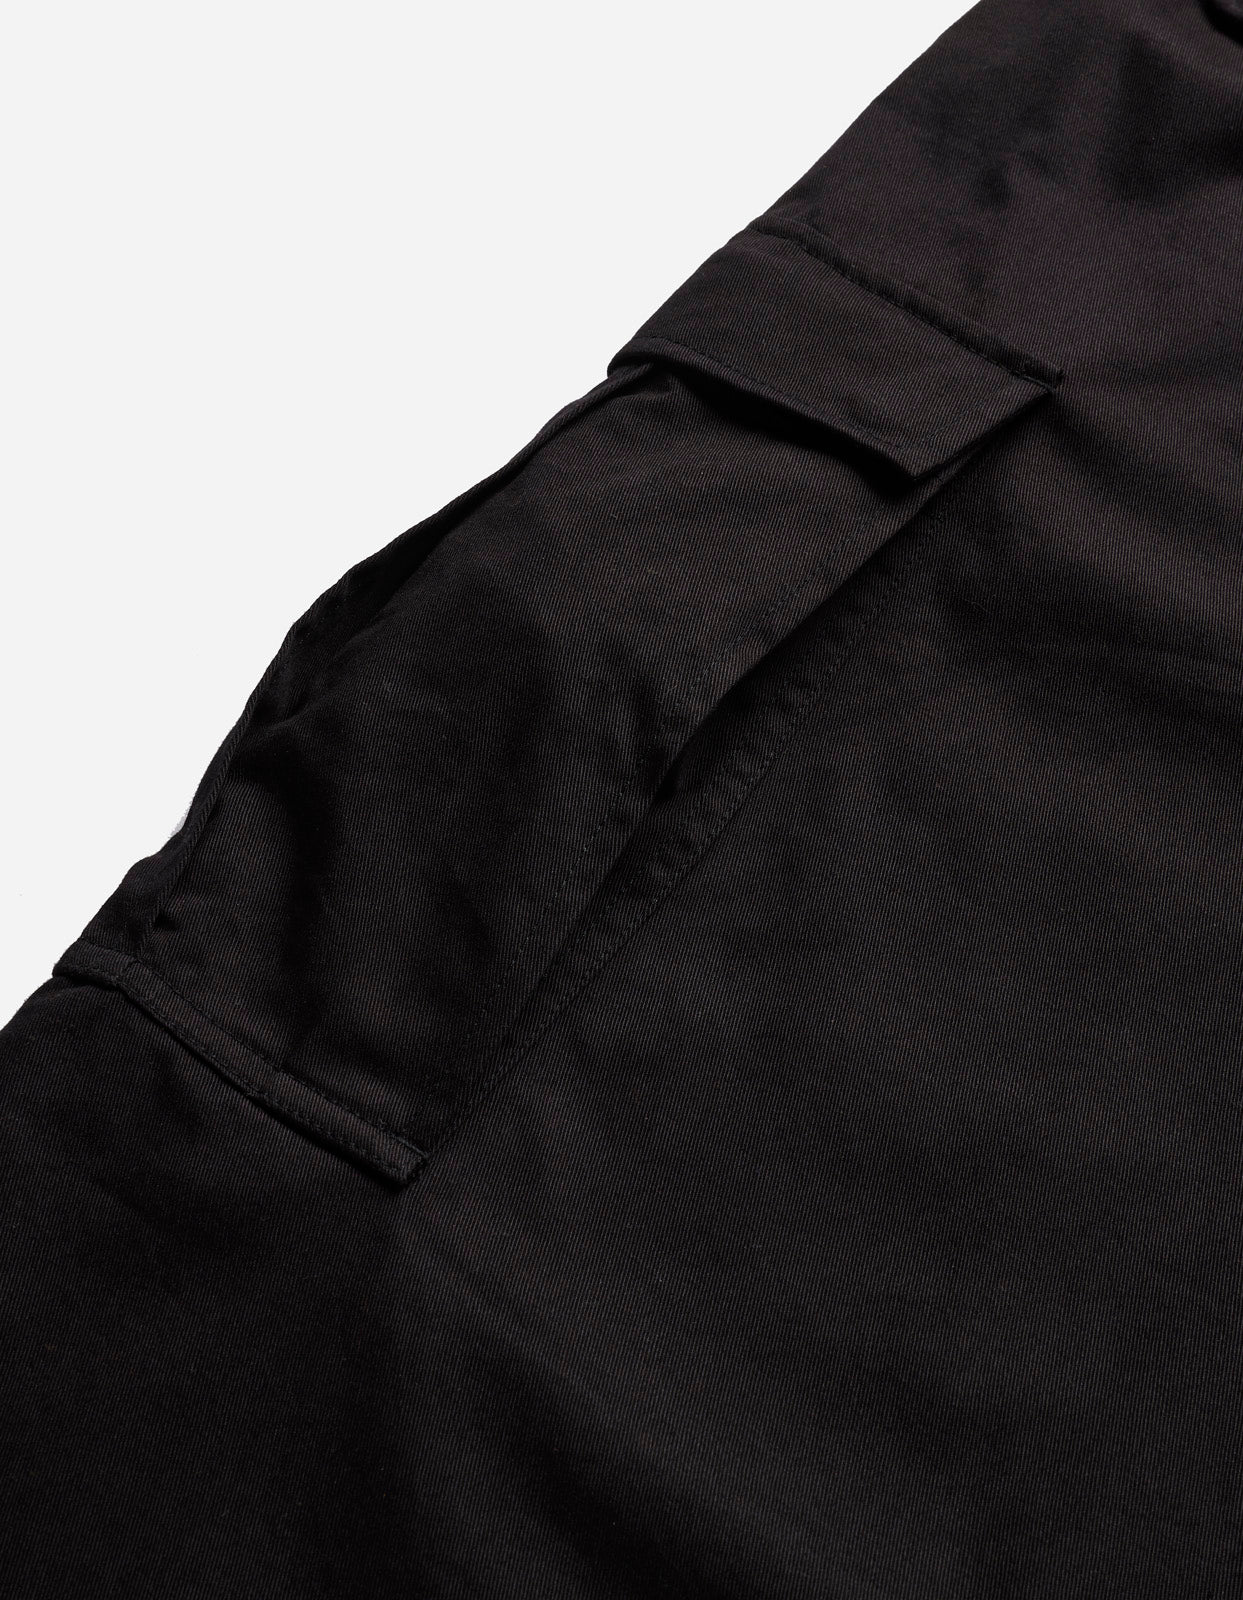 4521 M65N Cargo Pants Black